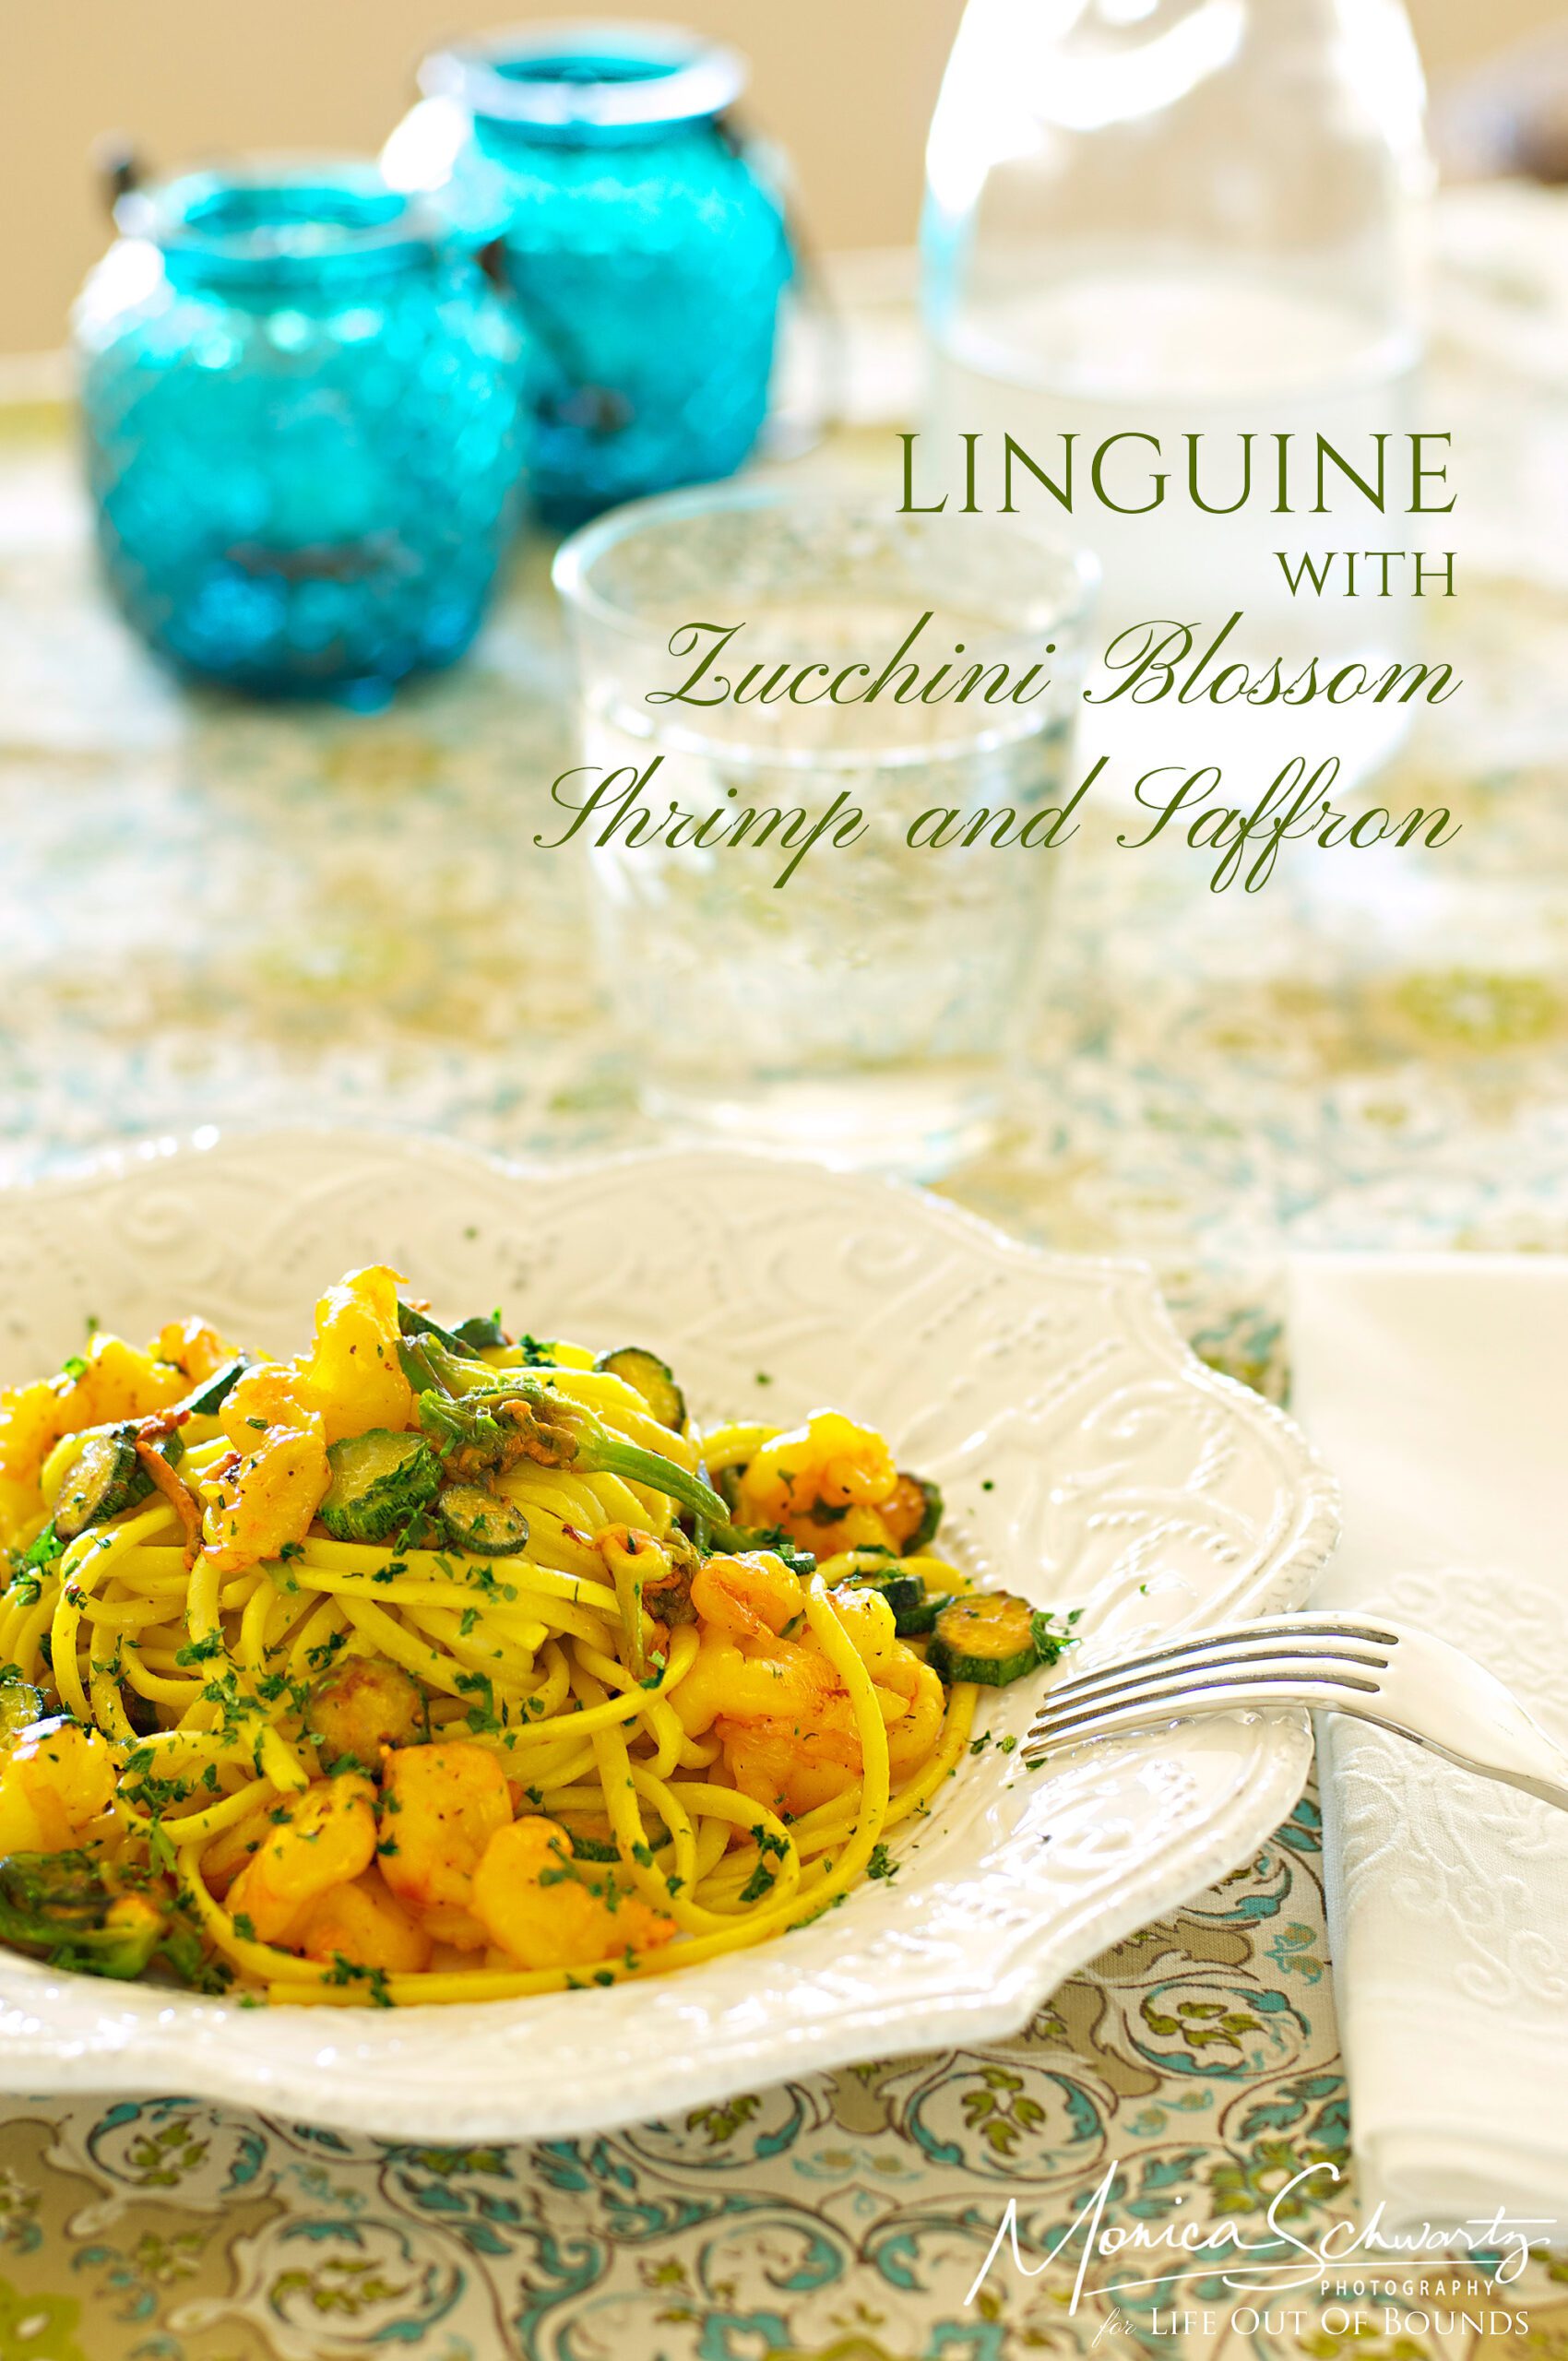 Linguine-with-Zucchini-blossom-shrimp-and-saffron-recipe